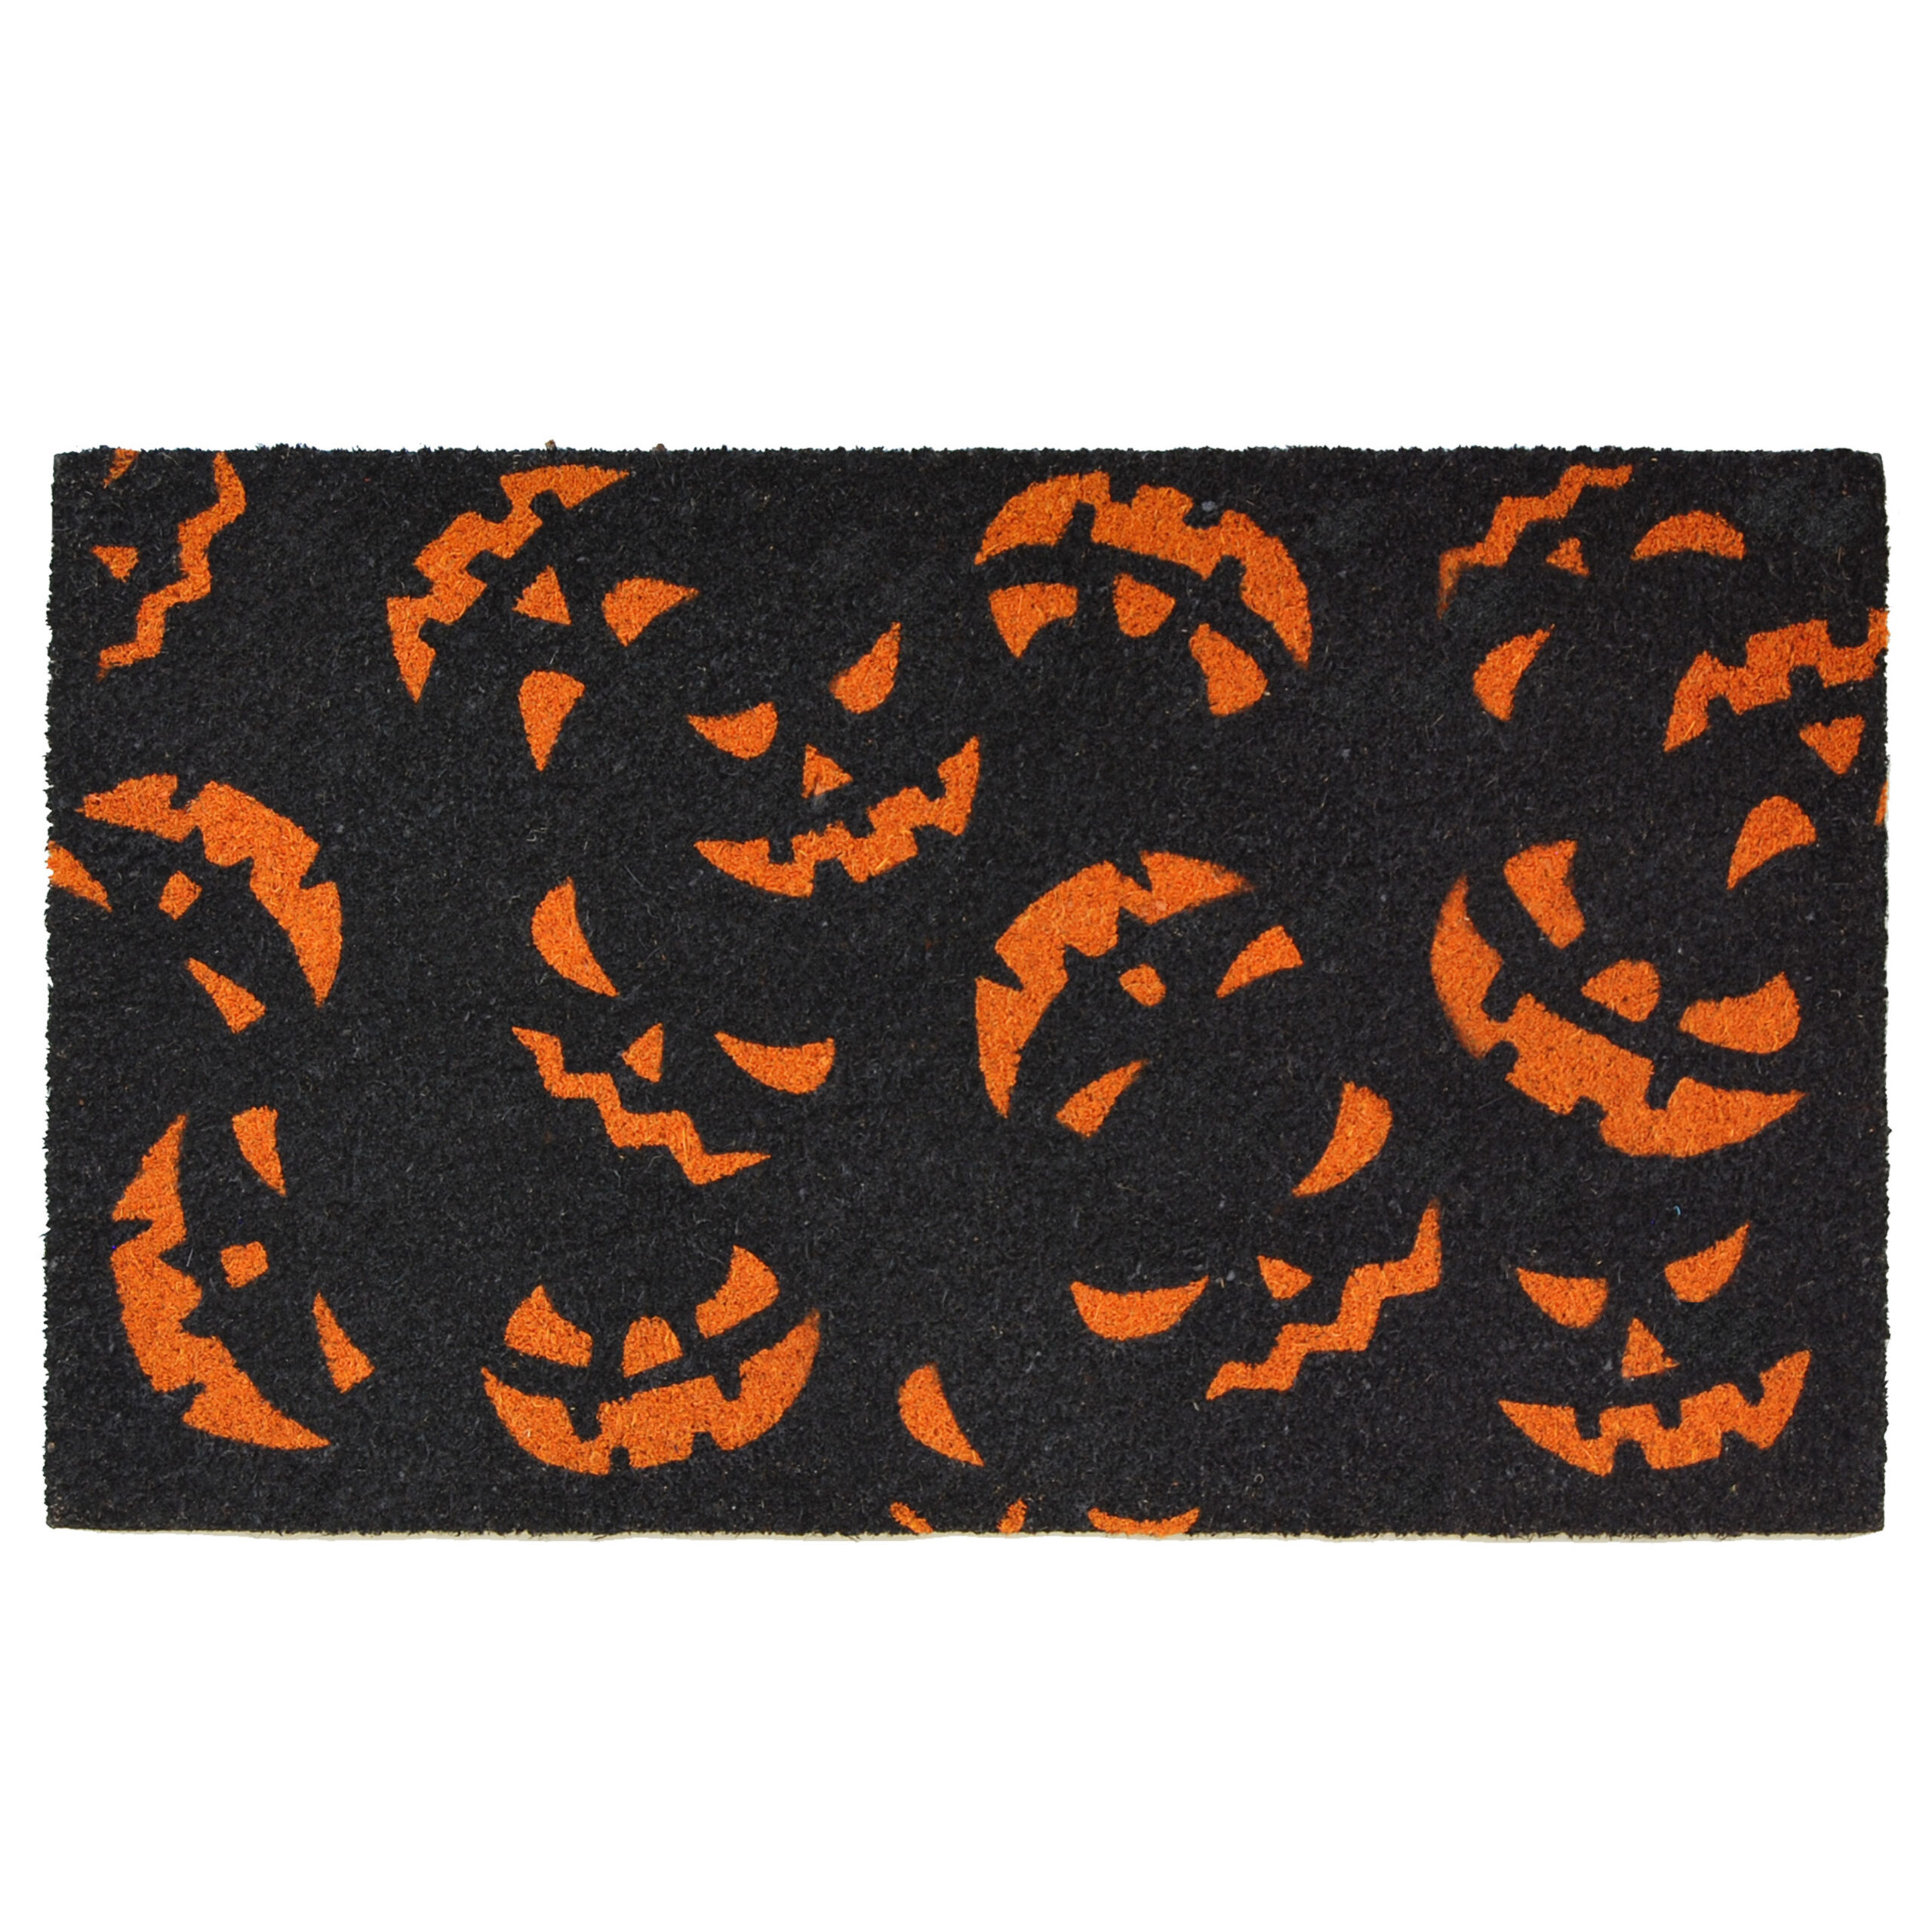 Scary Pumpkins Doormat - callowaymills